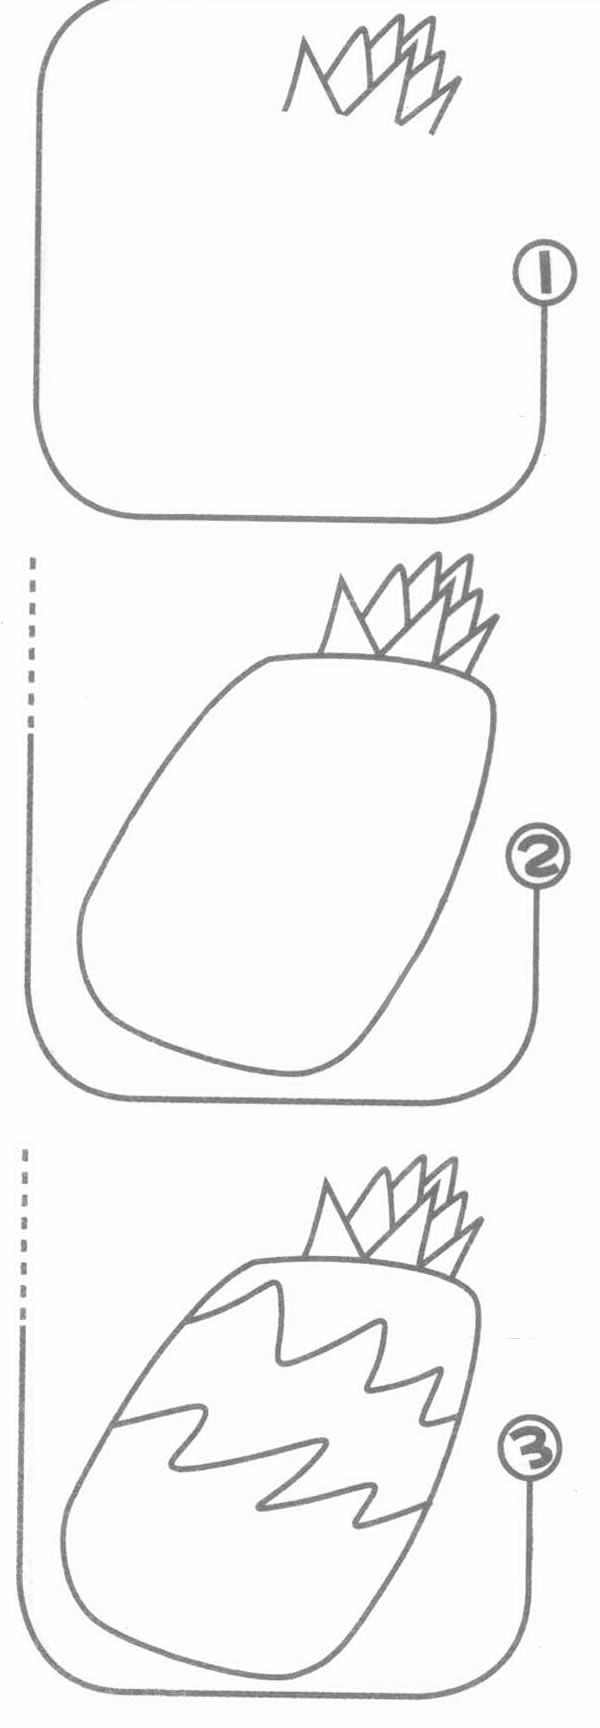 卡通菠萝简笔画图片 卡通菠萝怎么画